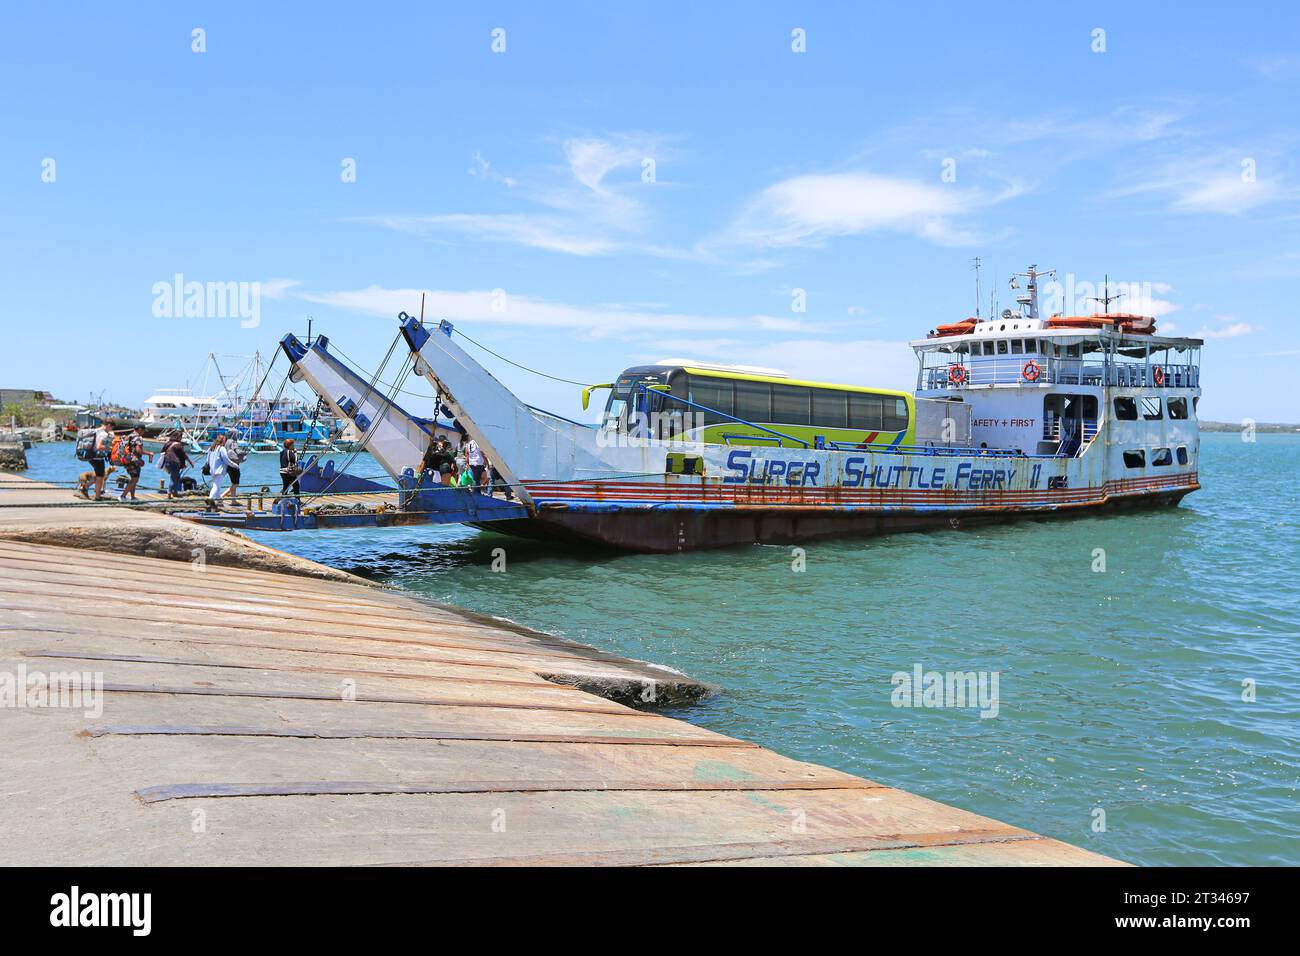 Passagers et RO-RO cargo cargo 'Super Shuttle Ferry 11' dans le port de Hagnaya (île de Cebu) à Santa Fe (Bantayan), région de Visayas, Philippines ferries de fret Banque D'Images